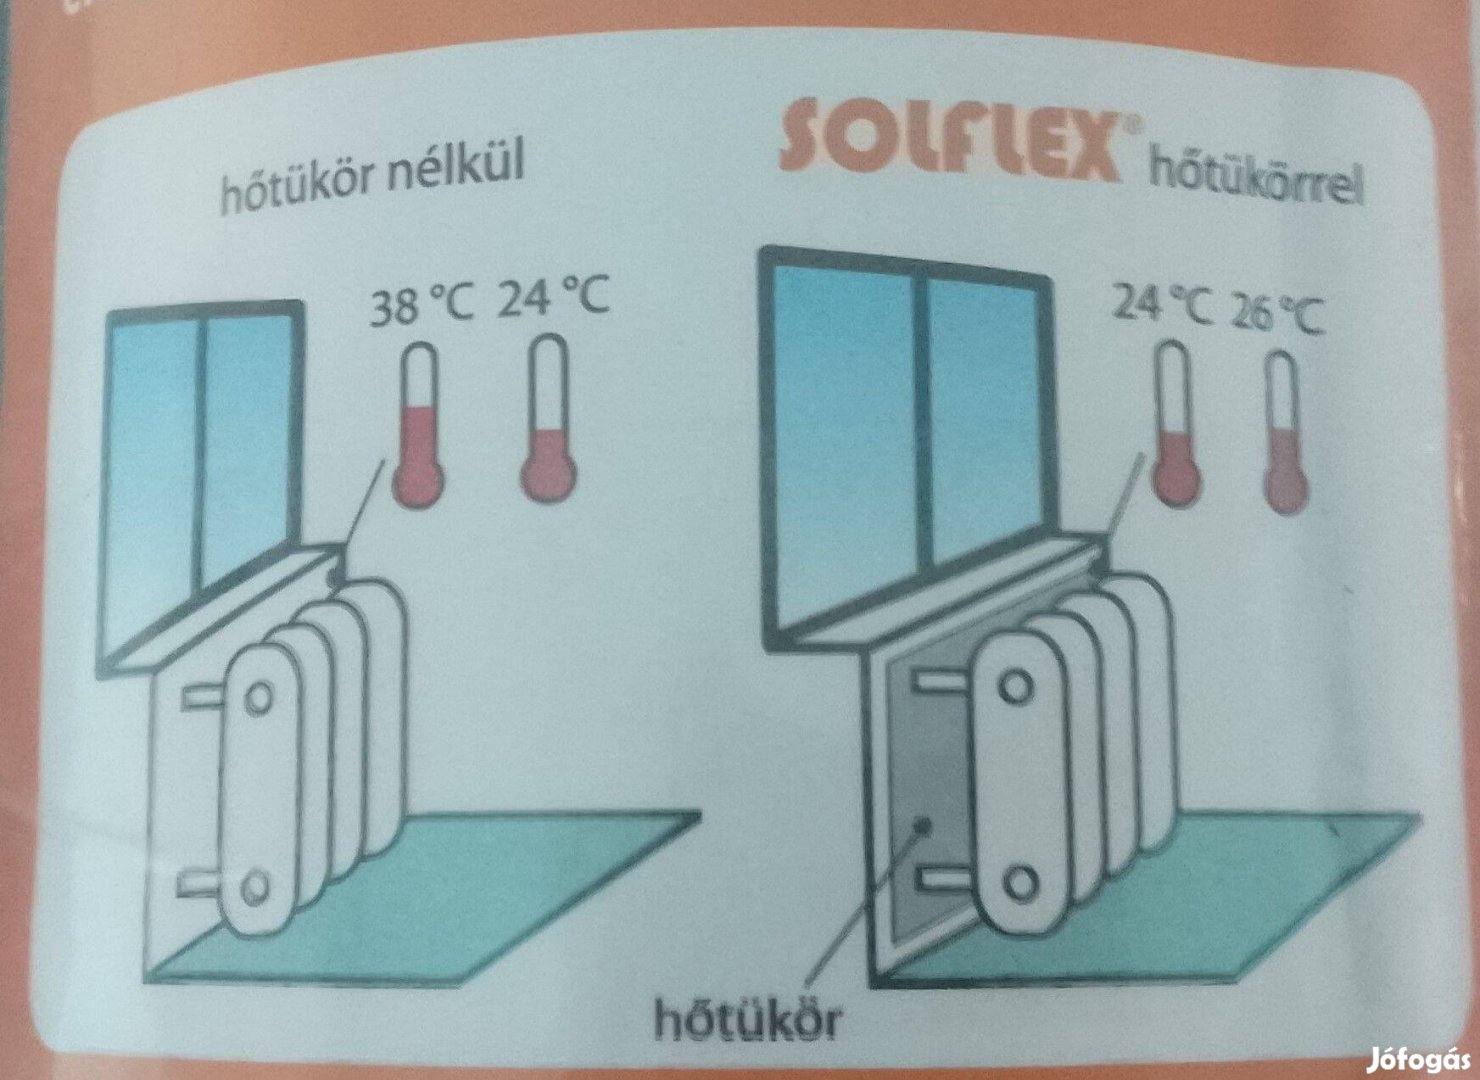 Solflex hőtükör vadonatúj ,2 darab radiátor ,konvektor mögé helyezve